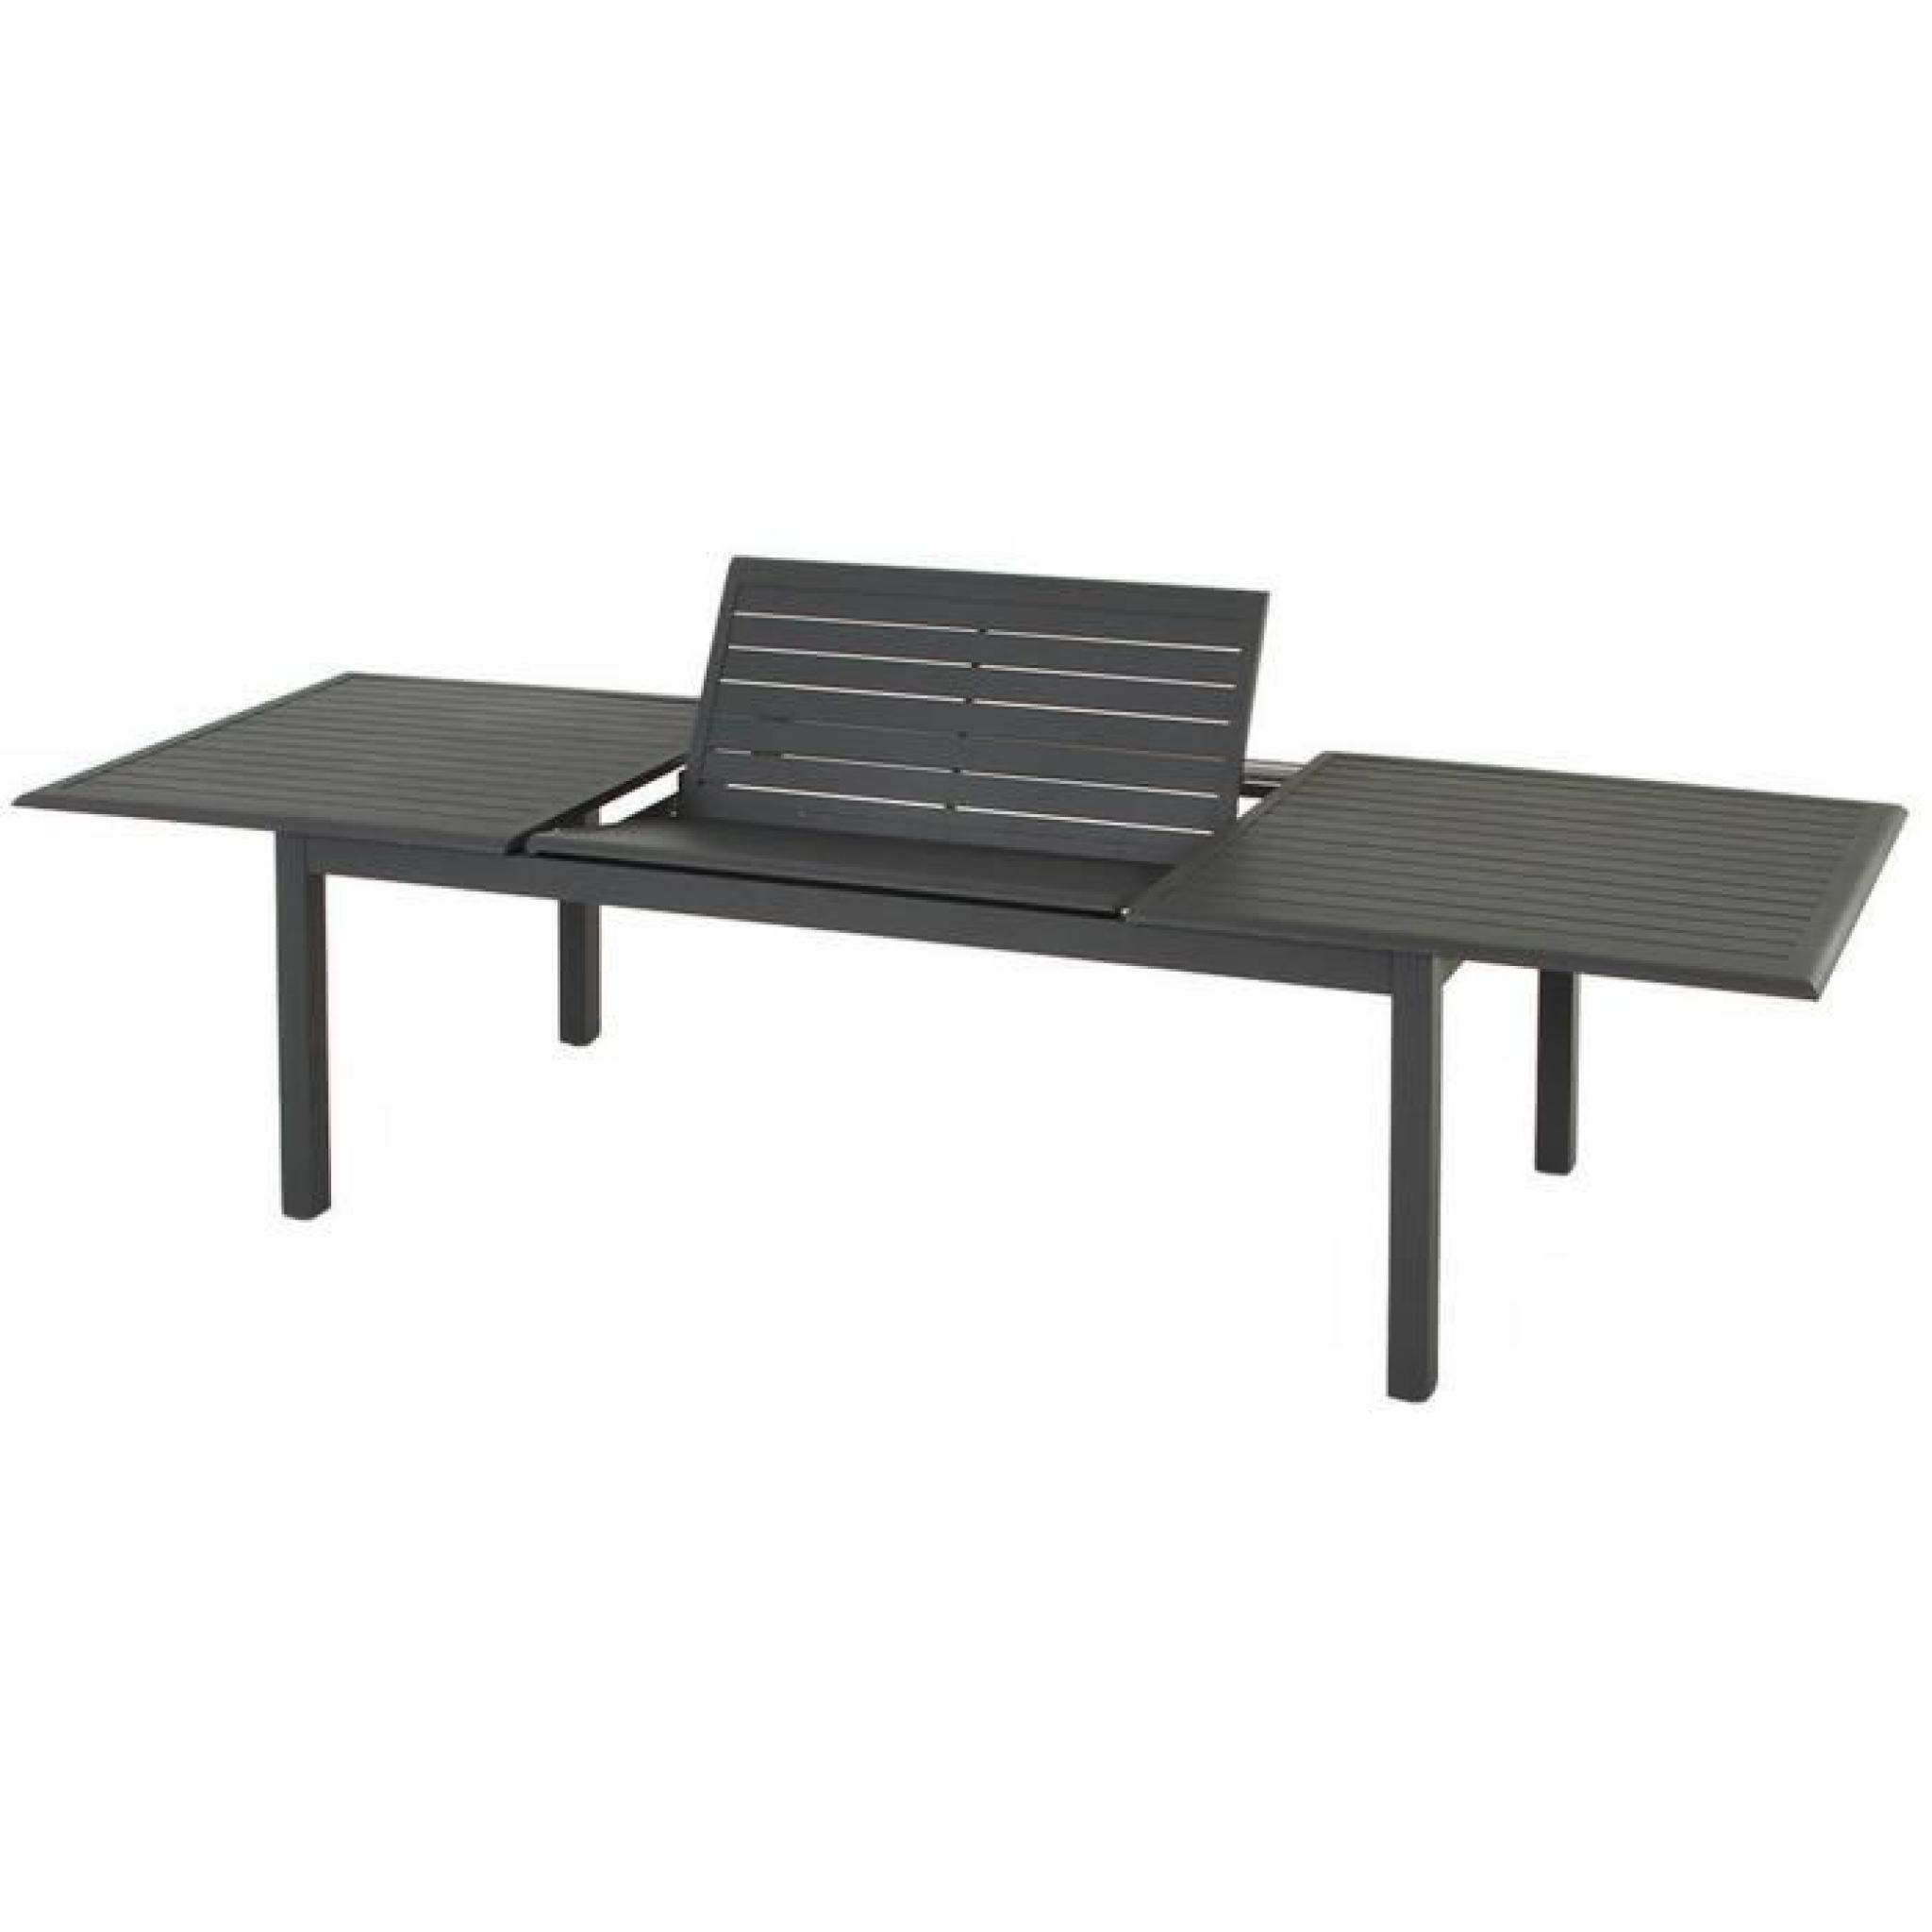 Table extensible en aluminium de couleur ardoise - Dim : L 200/300 x P 100 x H 75 cm   pas cher